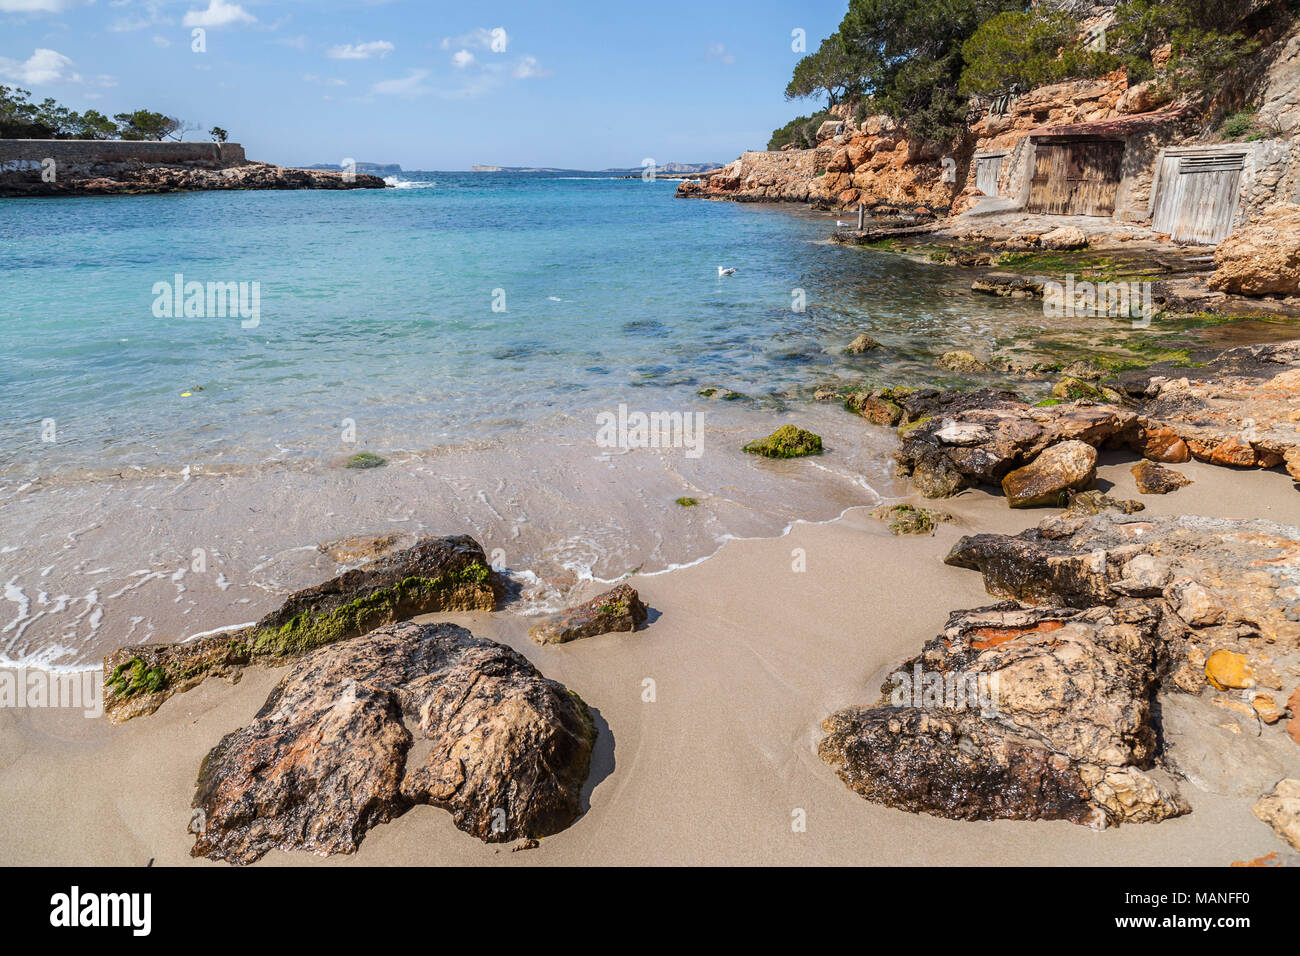 Mediterraneo, Spiaggia Cala Gracio, città di Sant Antoni, isola di Ibiza,Spagna. Foto Stock